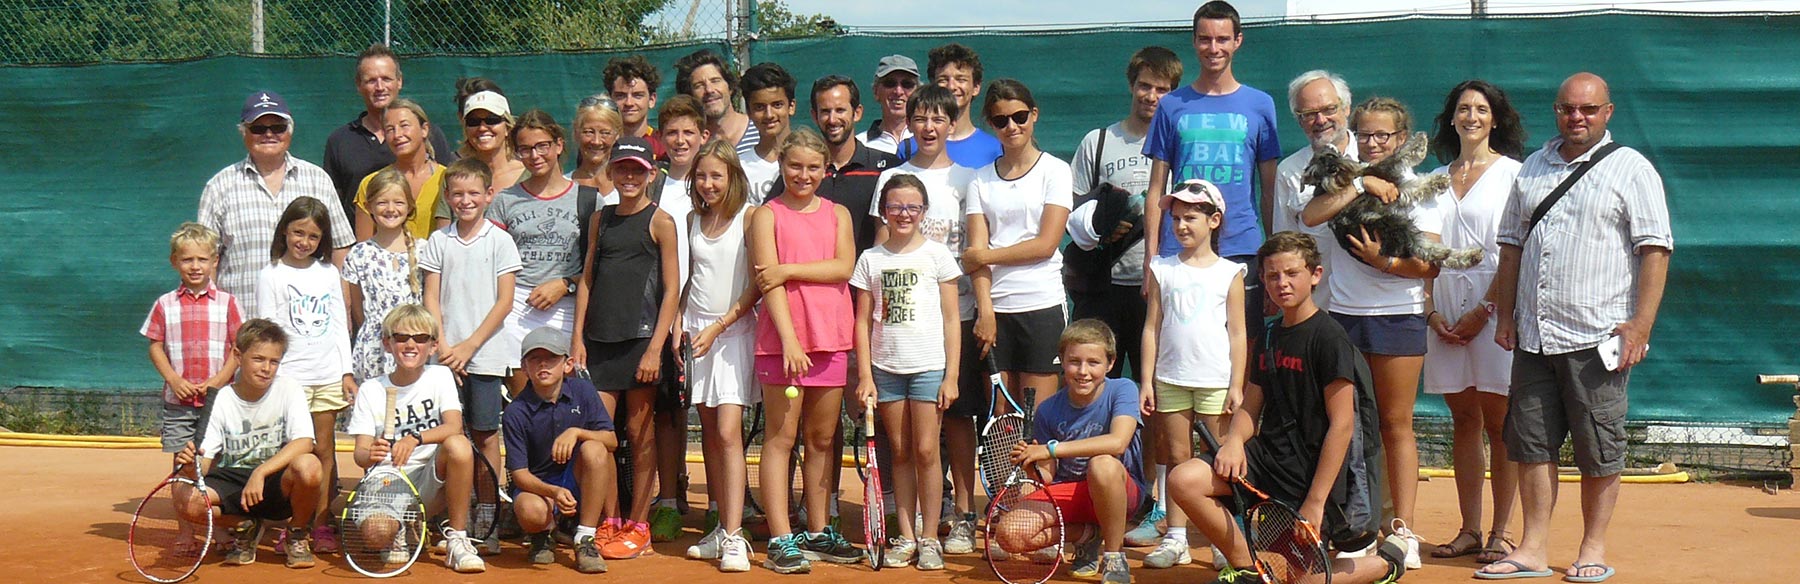 Photo de groupe stage de tennis au tennis Club de Quehan.